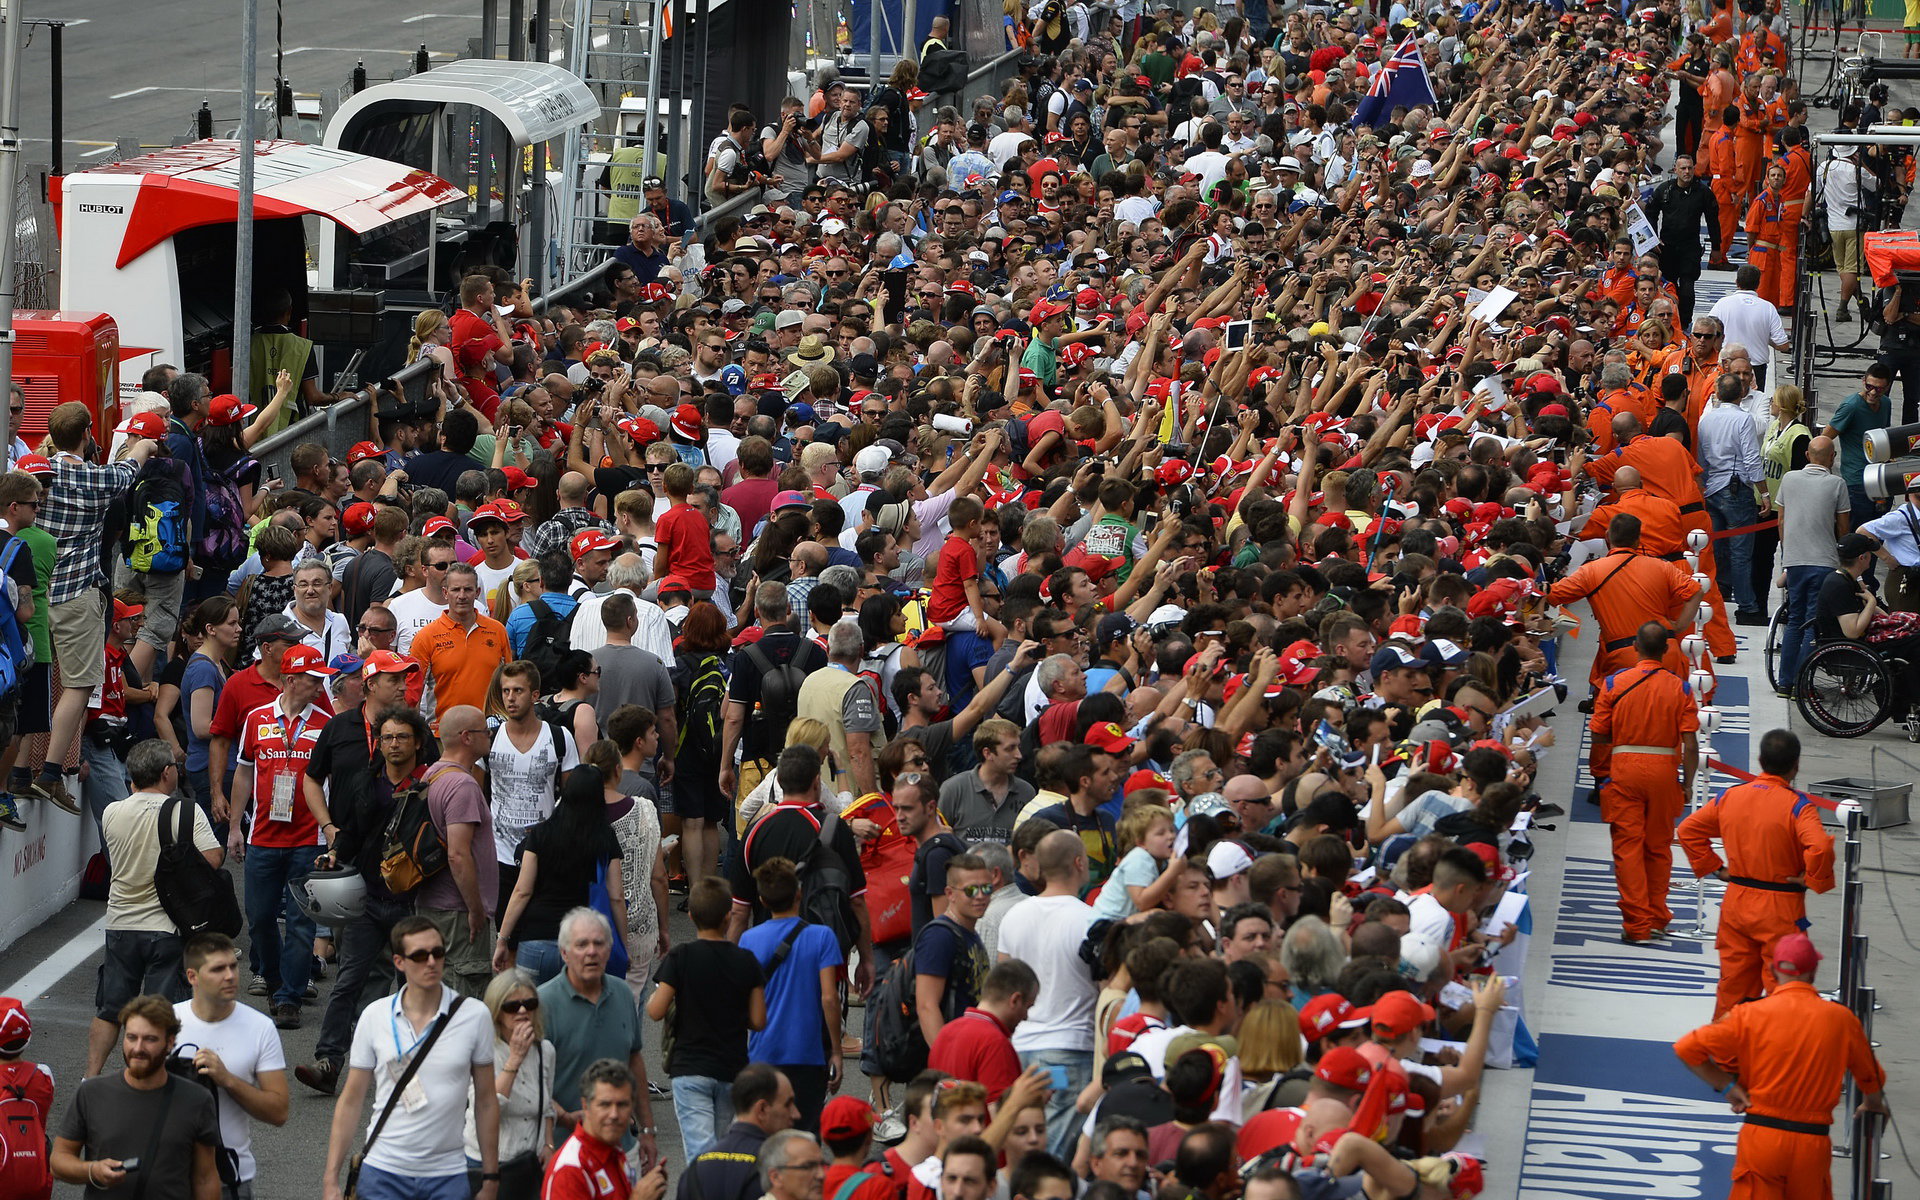 Fanoušci v pitlane, GP Itálie (Monza)